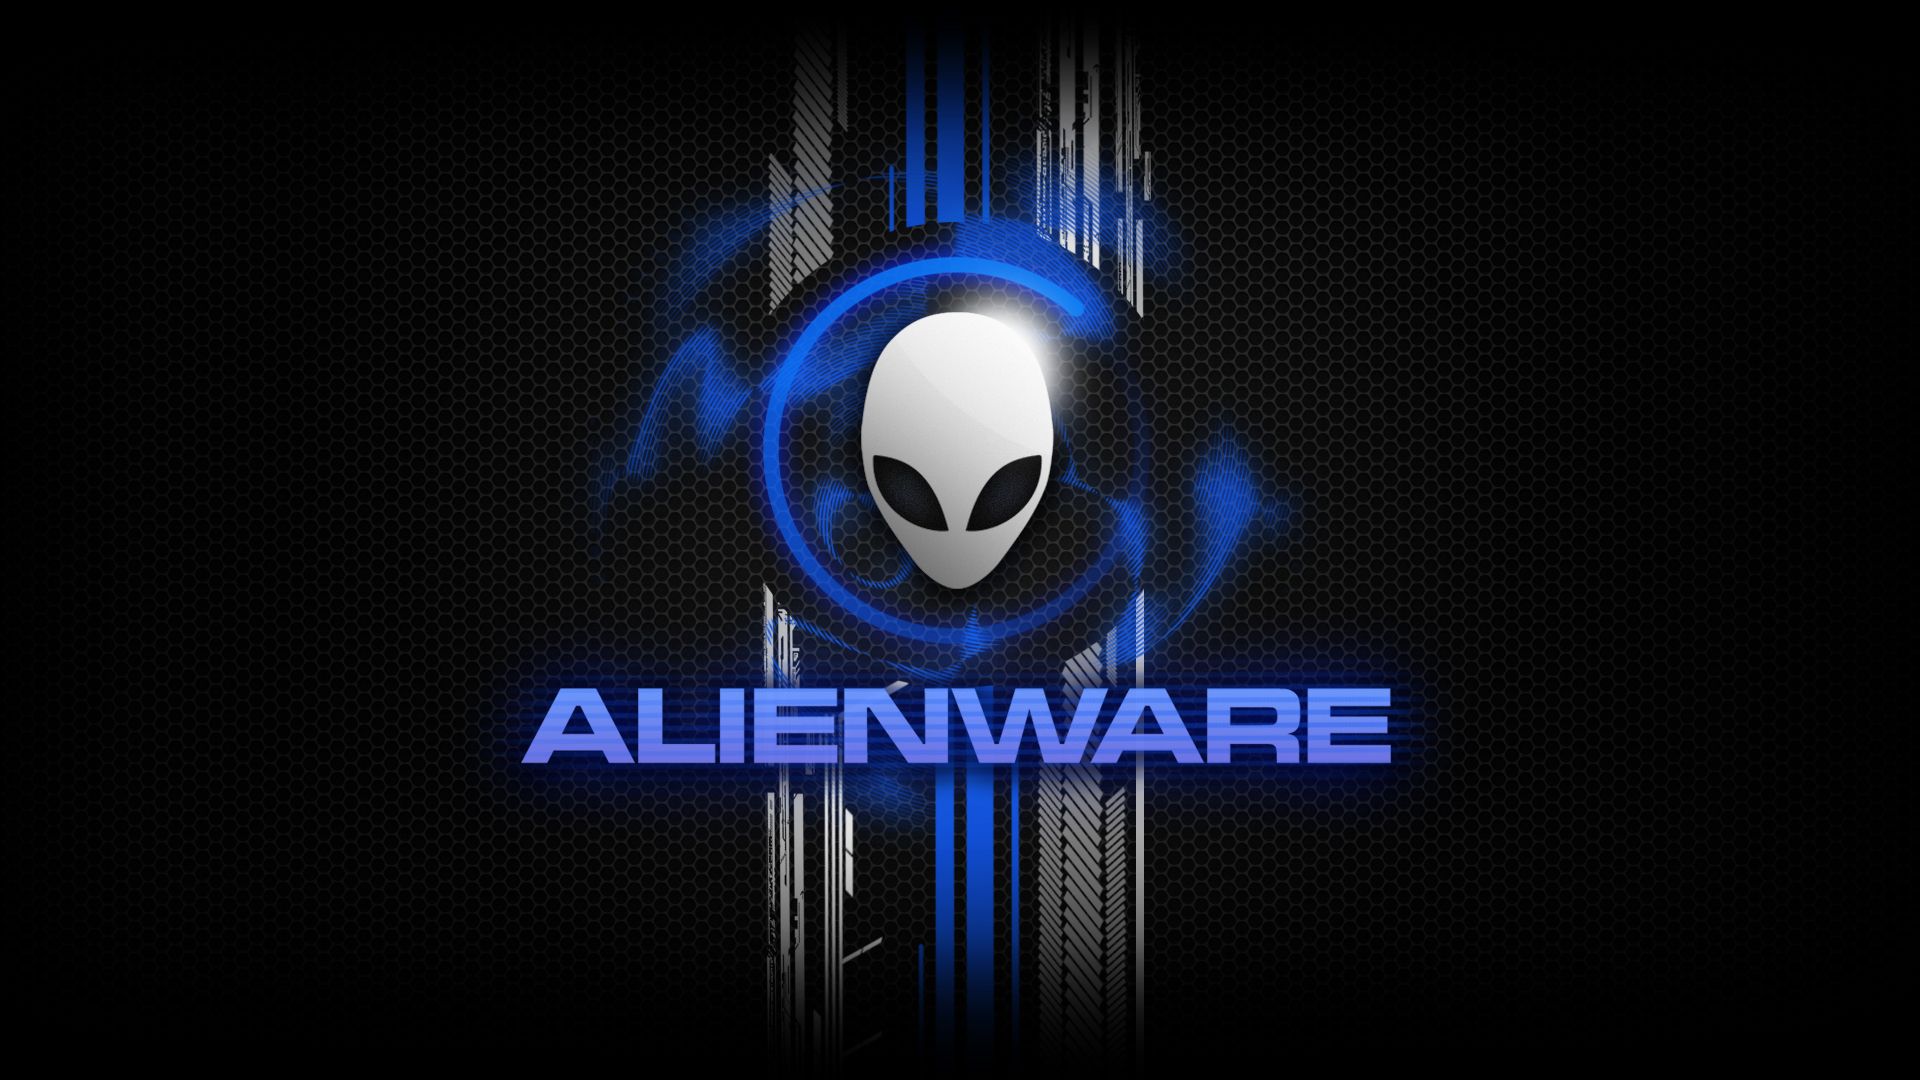 Alienware Live Wallpapers